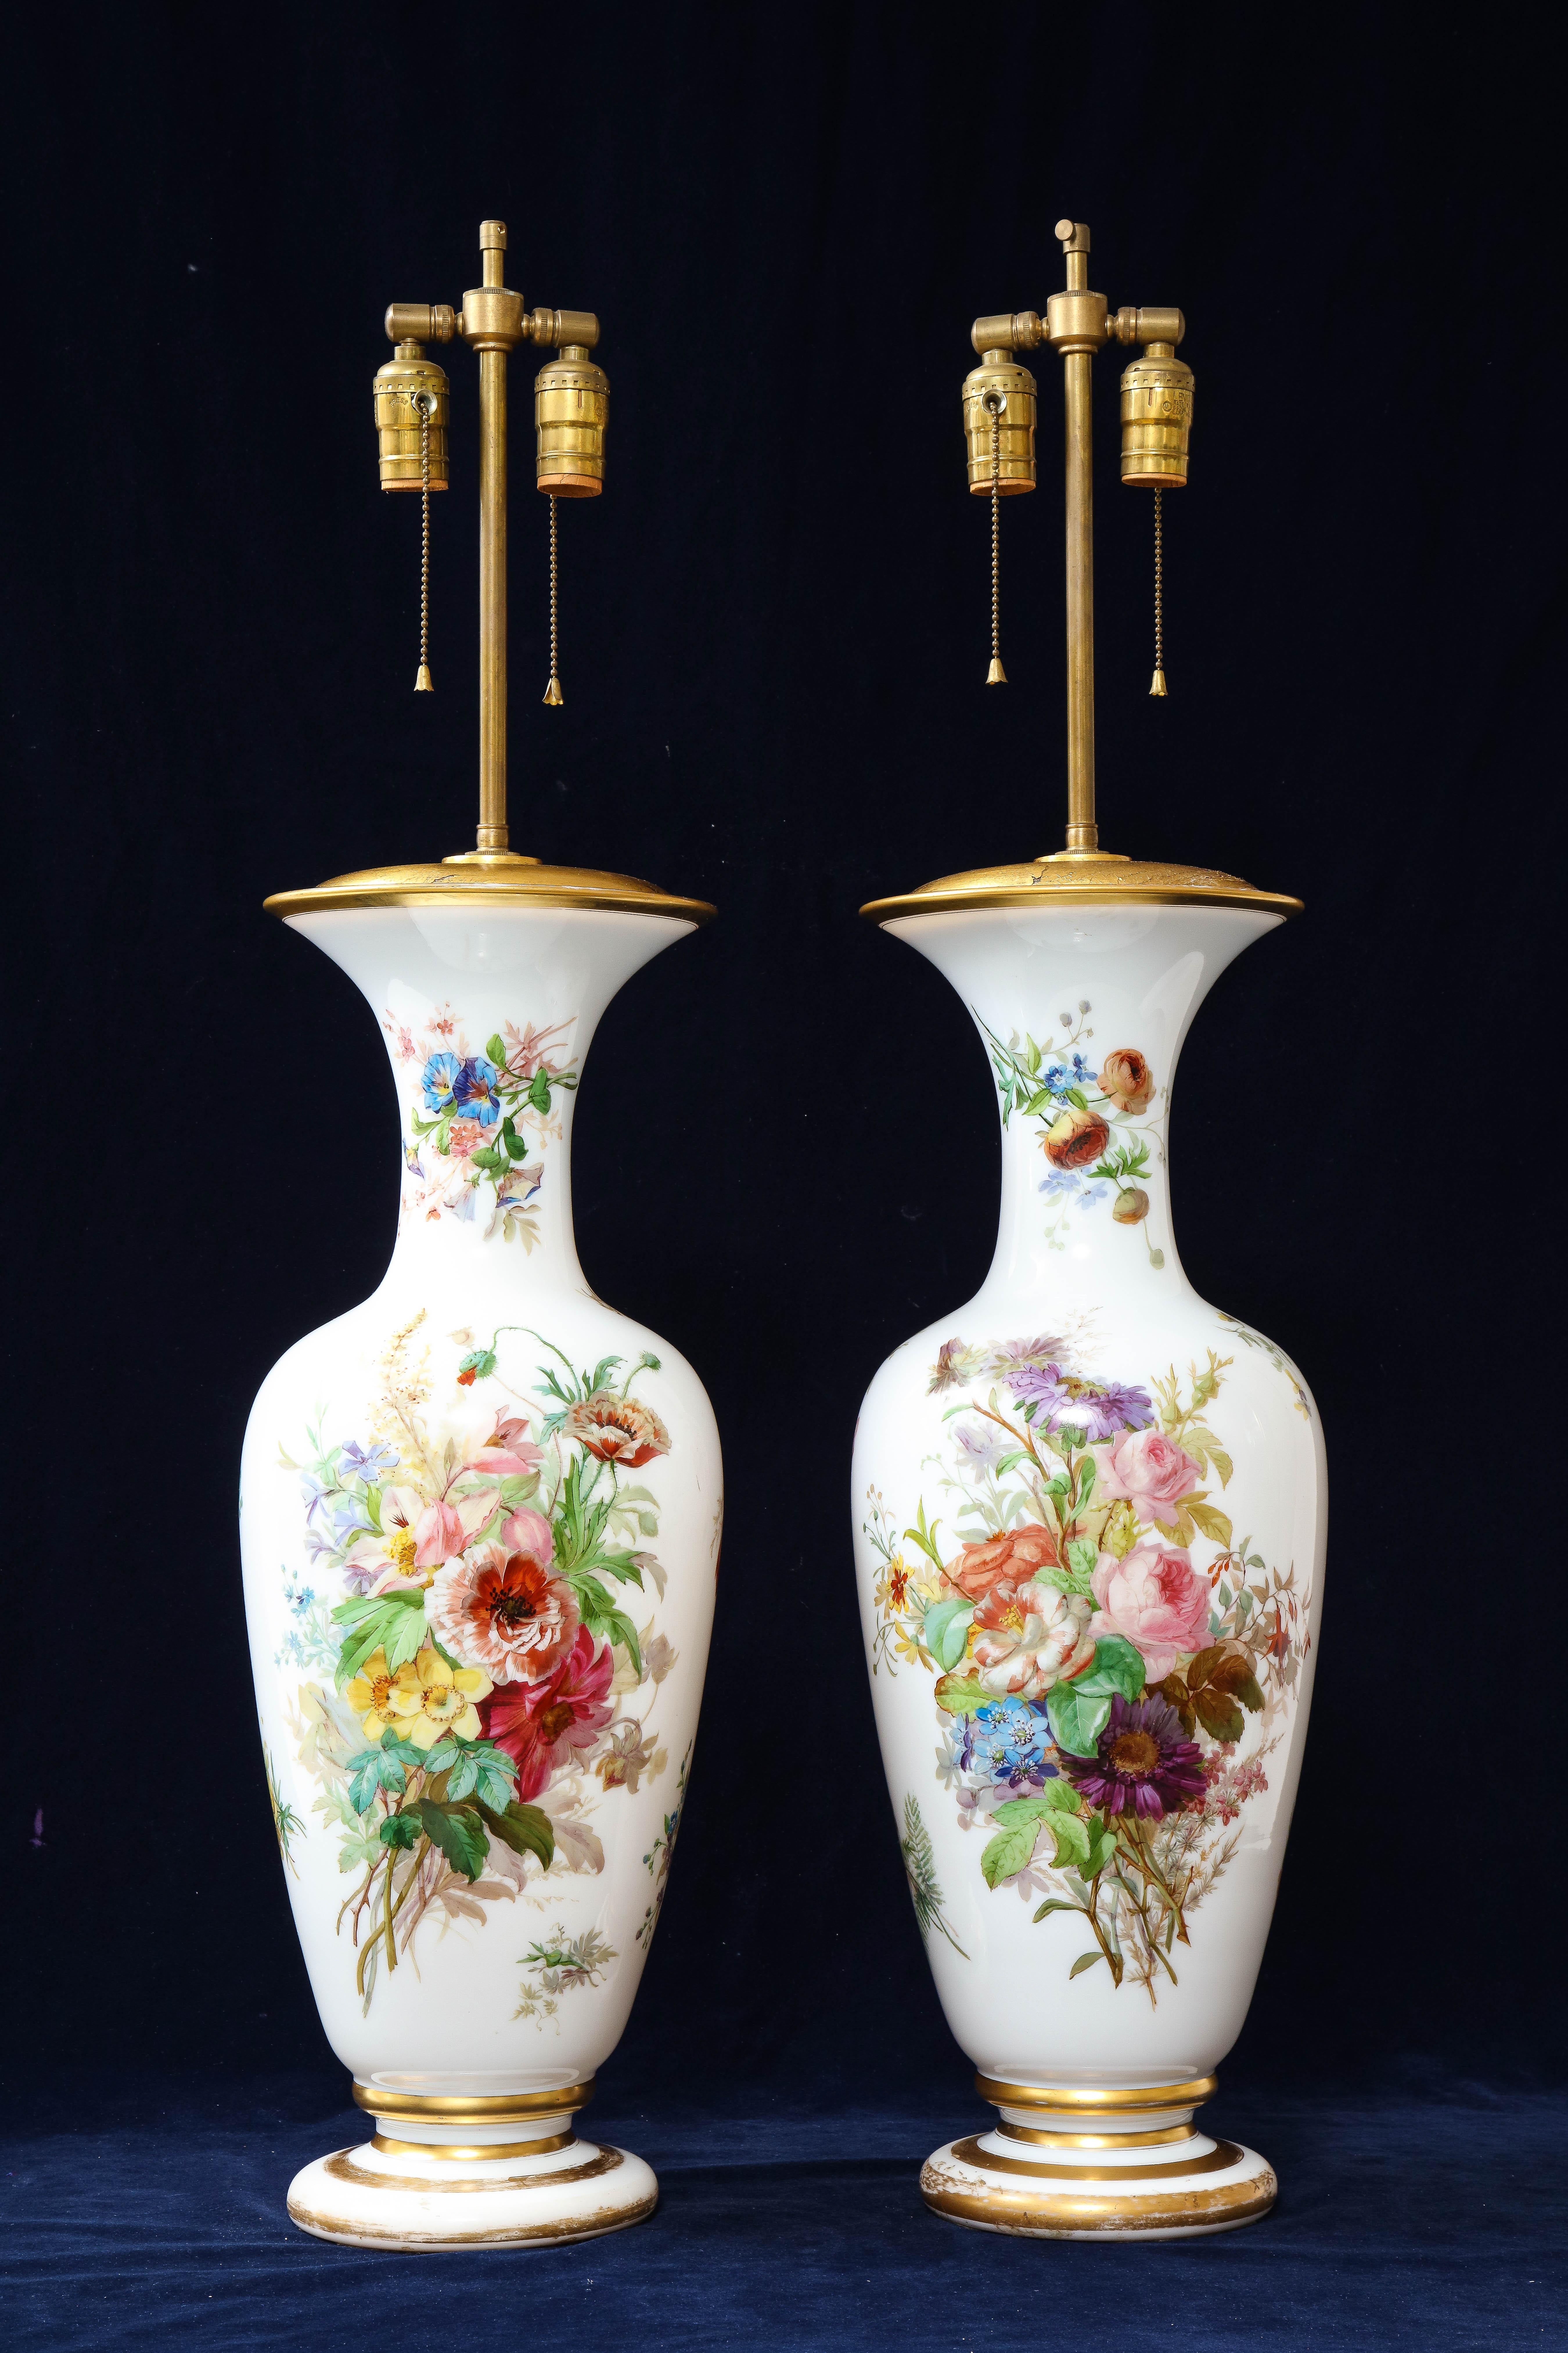 Fabuleuse et monumentale paire de vases en cristal blanc opalin de Baccarat de style Louis XVI français du XIXe siècle, en forme de balustre, décorés de fleurs et montés comme lampes. Chacune de ces lampes en cristal a été fabriquée dans les années